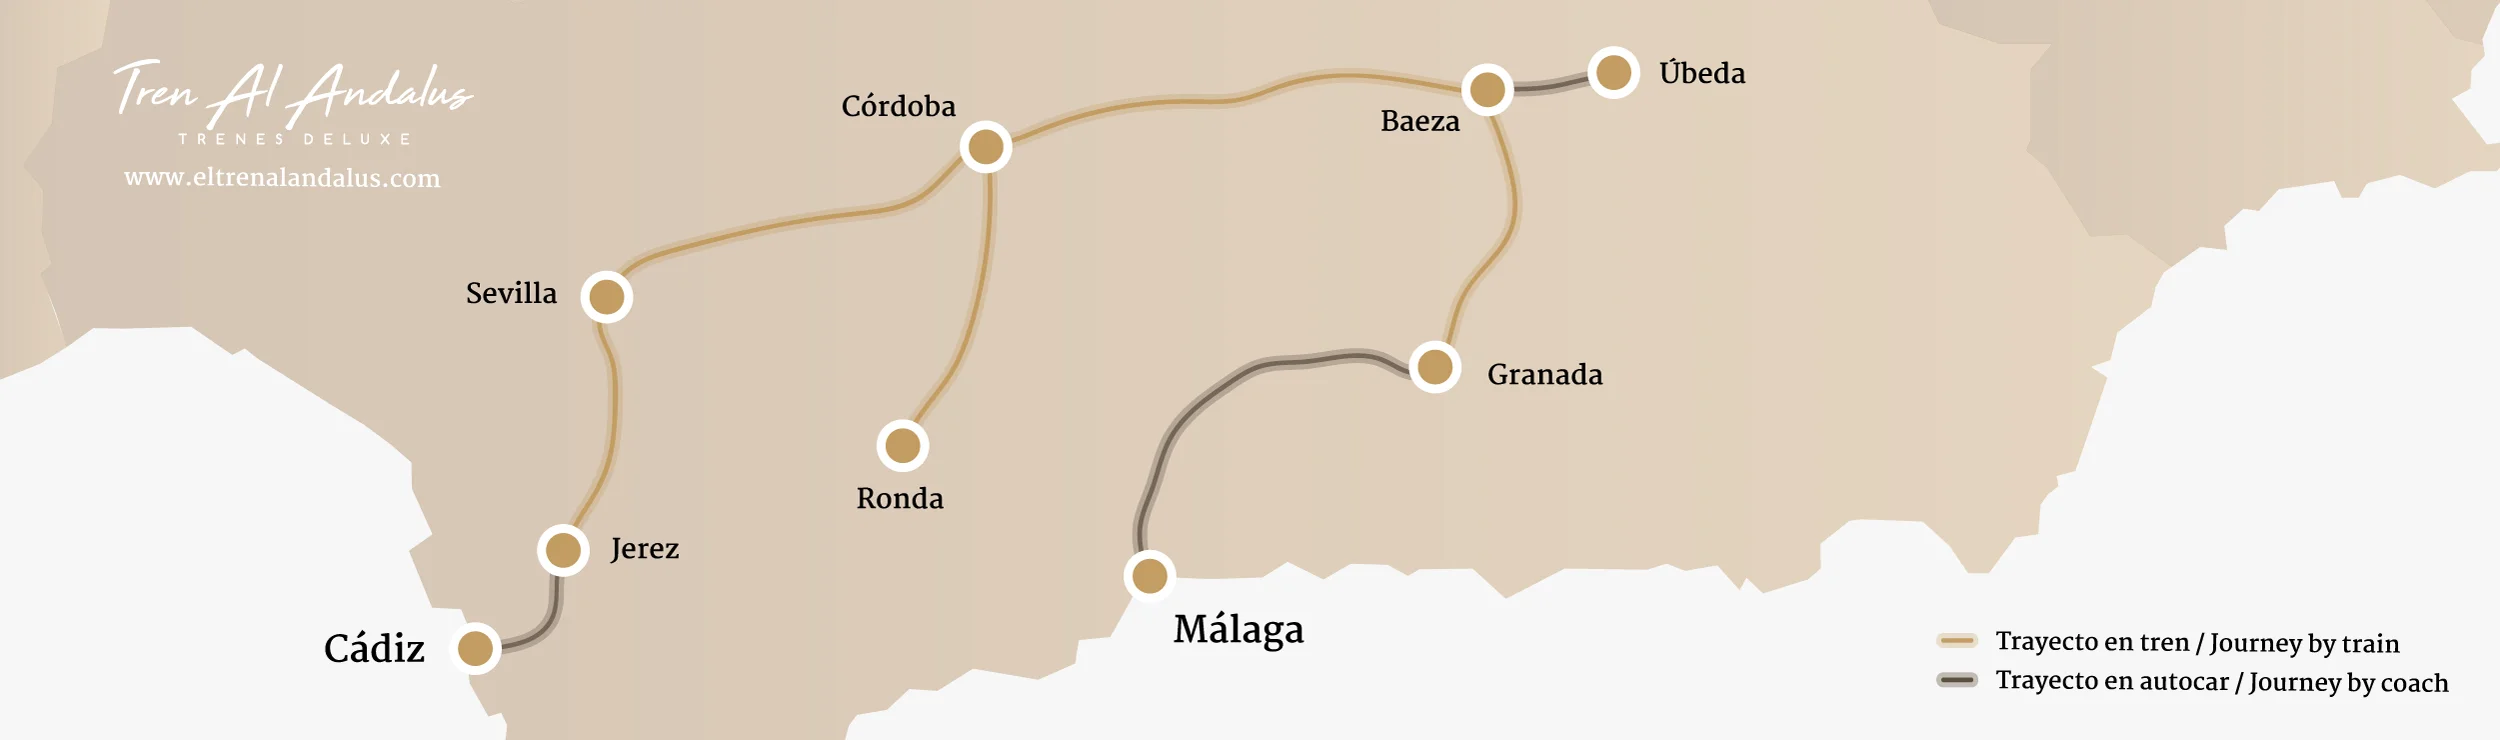 Mapa Tren Al-Andalus